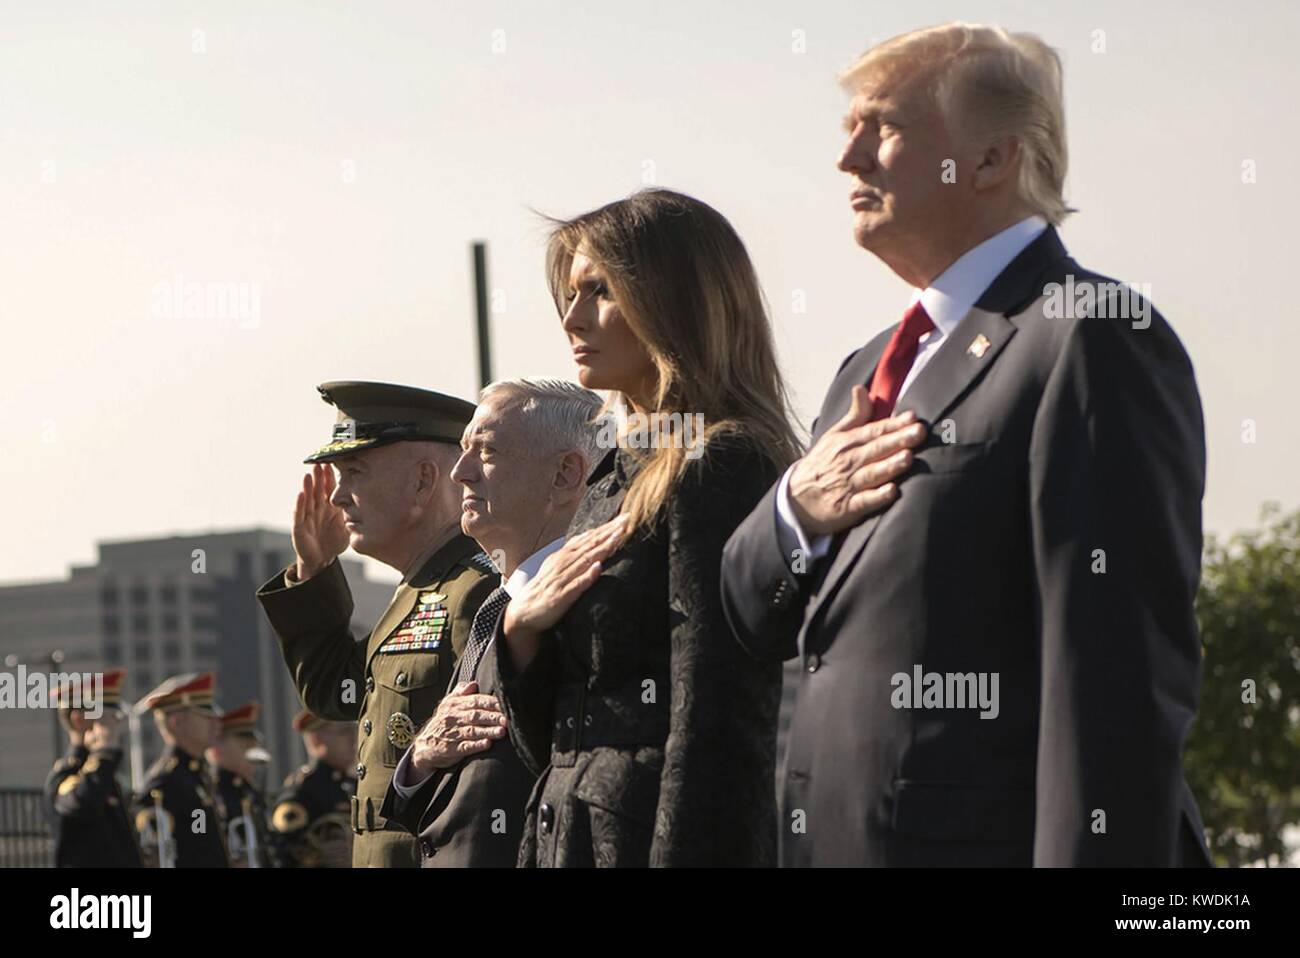 Präsident Trumpf während der 9/11 Einhaltung Zeremonie im Pentagon, Sept. 11, 2017. In Salute, R-L: Präsident Donald Trump, erste Dame Melania Trump, Verteidigung Sec. Jim Mattis, Gen. Joe Dunford, Chmn., gemeinsamen Stabschefs (BSLOC 2017 18 145) Stockfoto